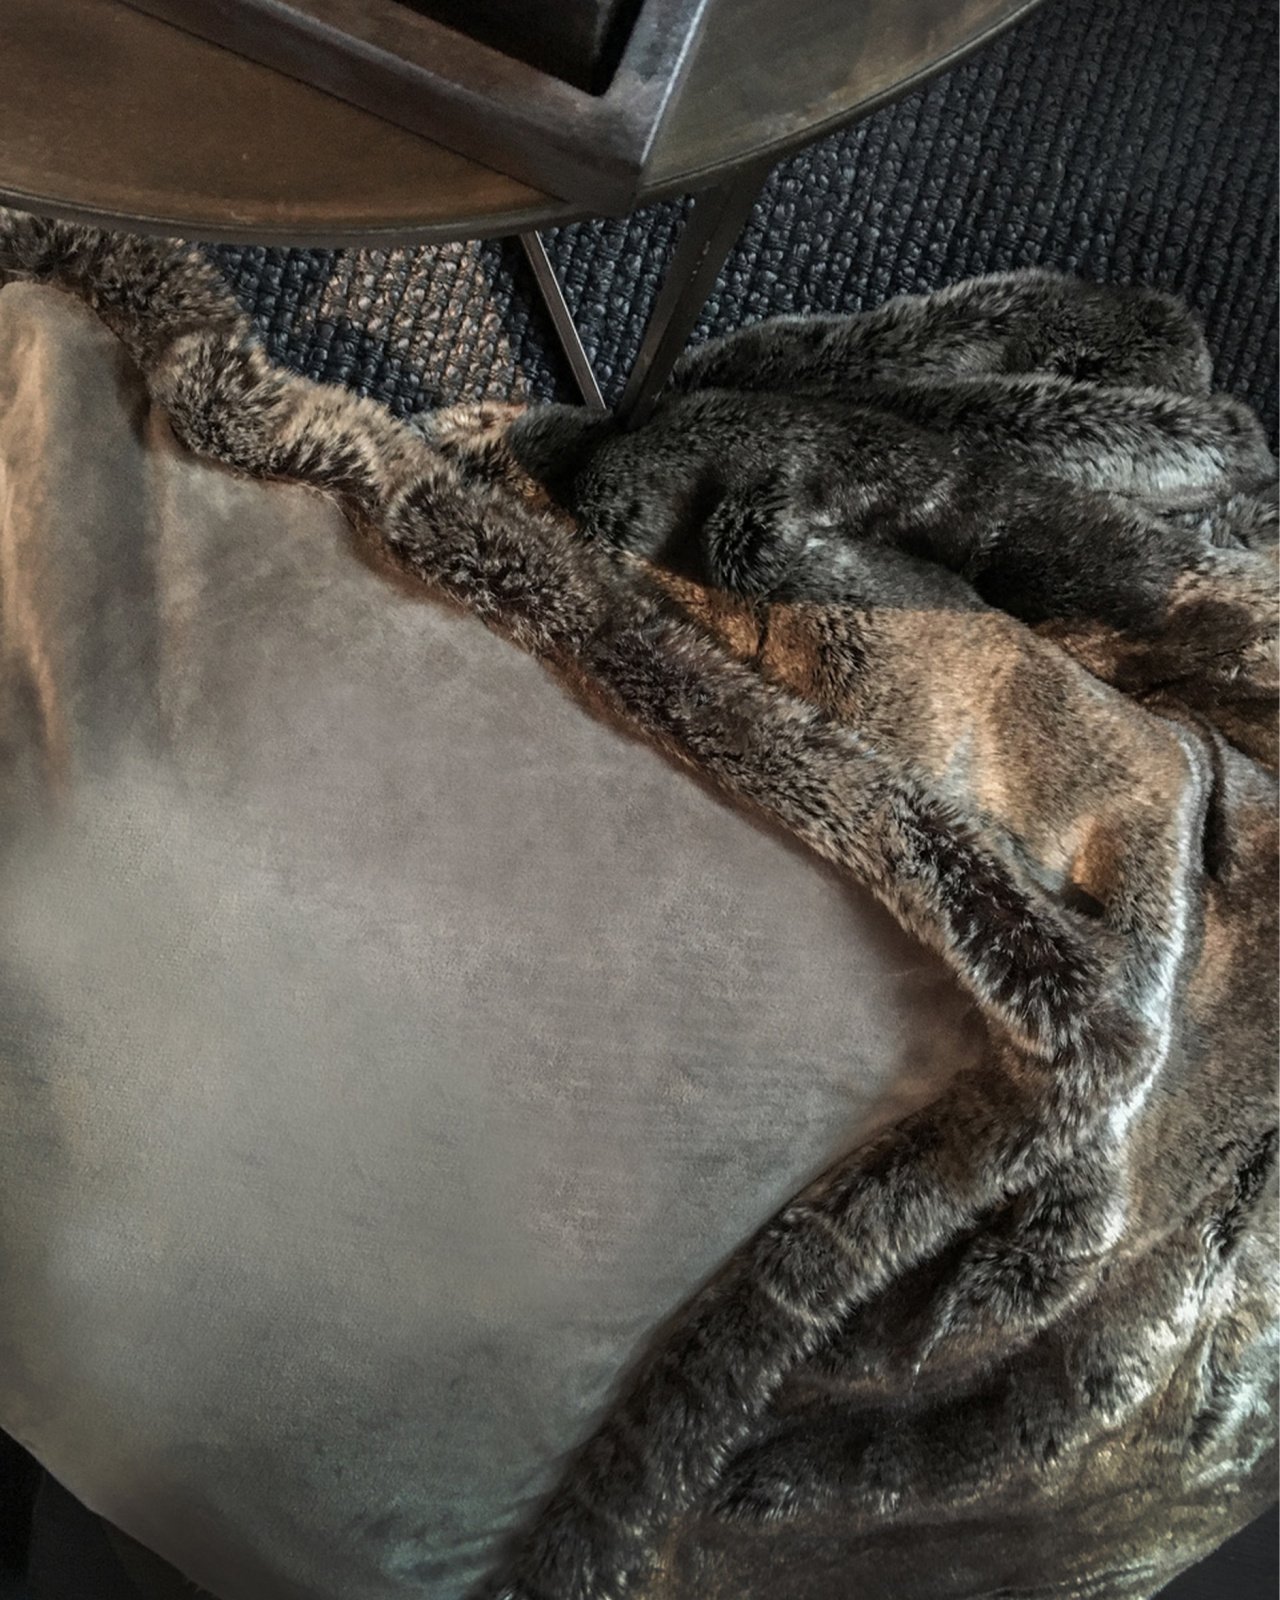 Bear Valboa cushion cover grey